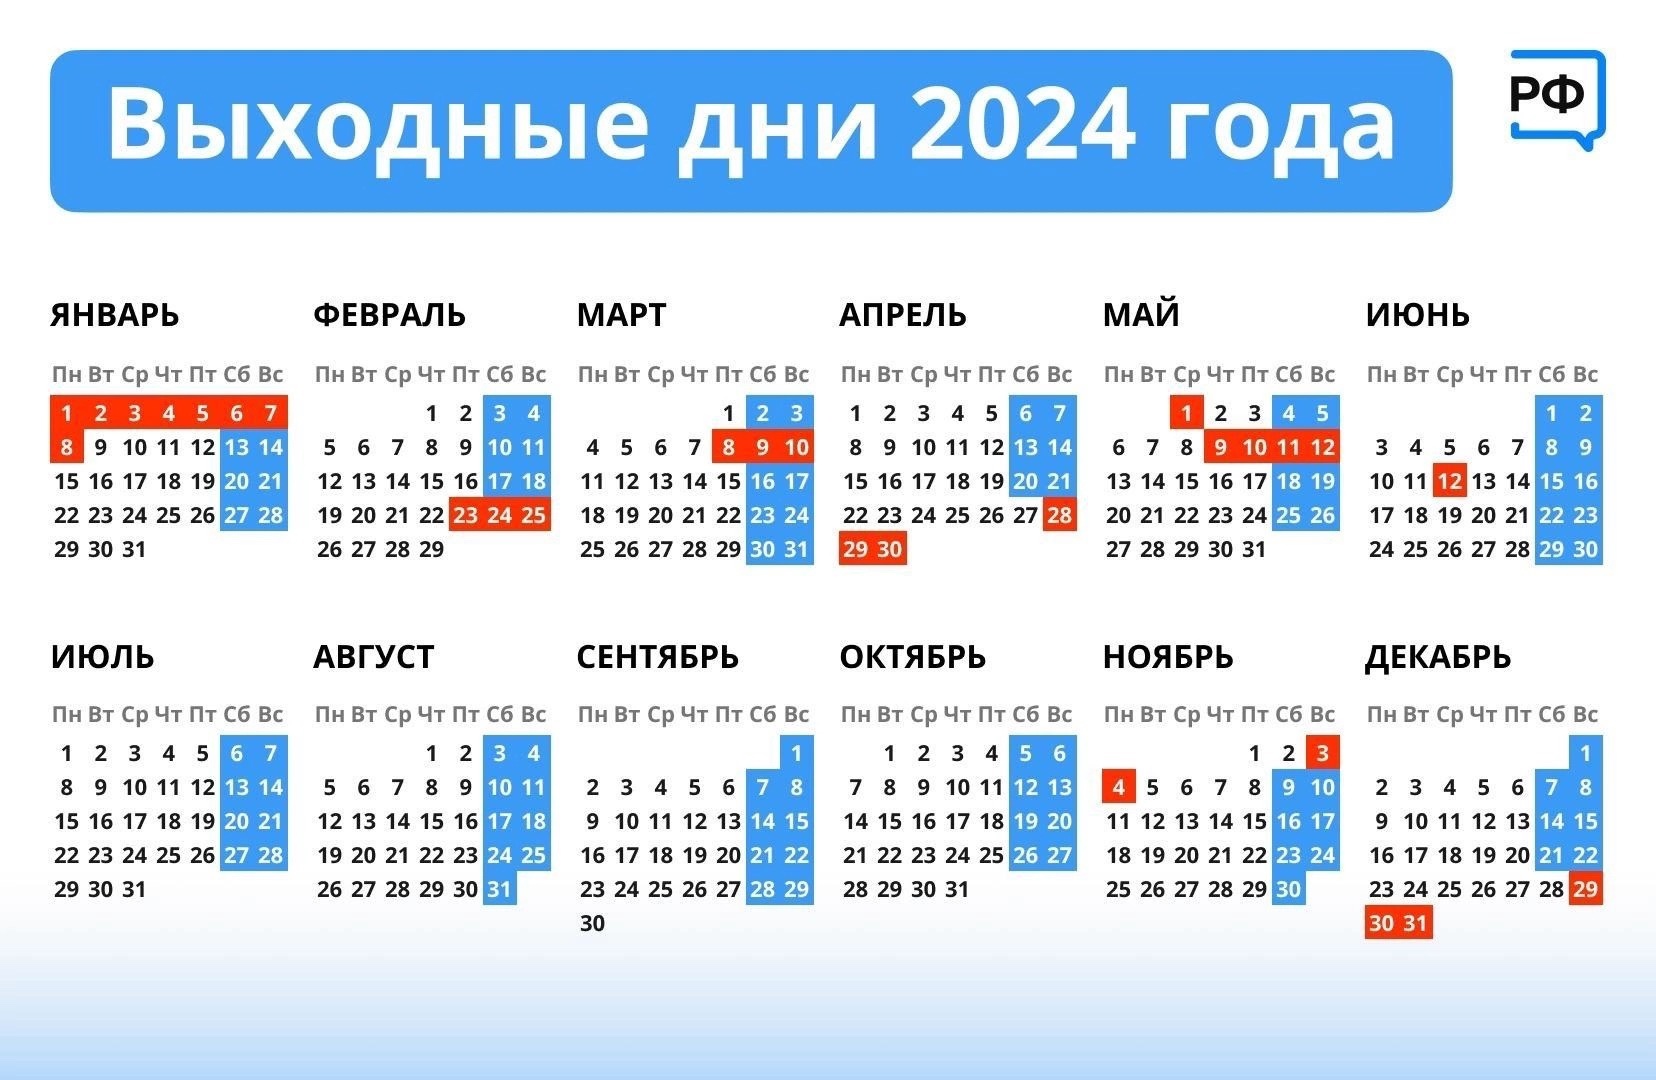 Январь 2024 куда сходить. Праздничные дни в 2022 году в России календарь. Календарь праздников 2022 года в России нерабочие дни. Календарь праздничных дней на 2022 год. Праздники в 2023 календарь нерабочих дней.